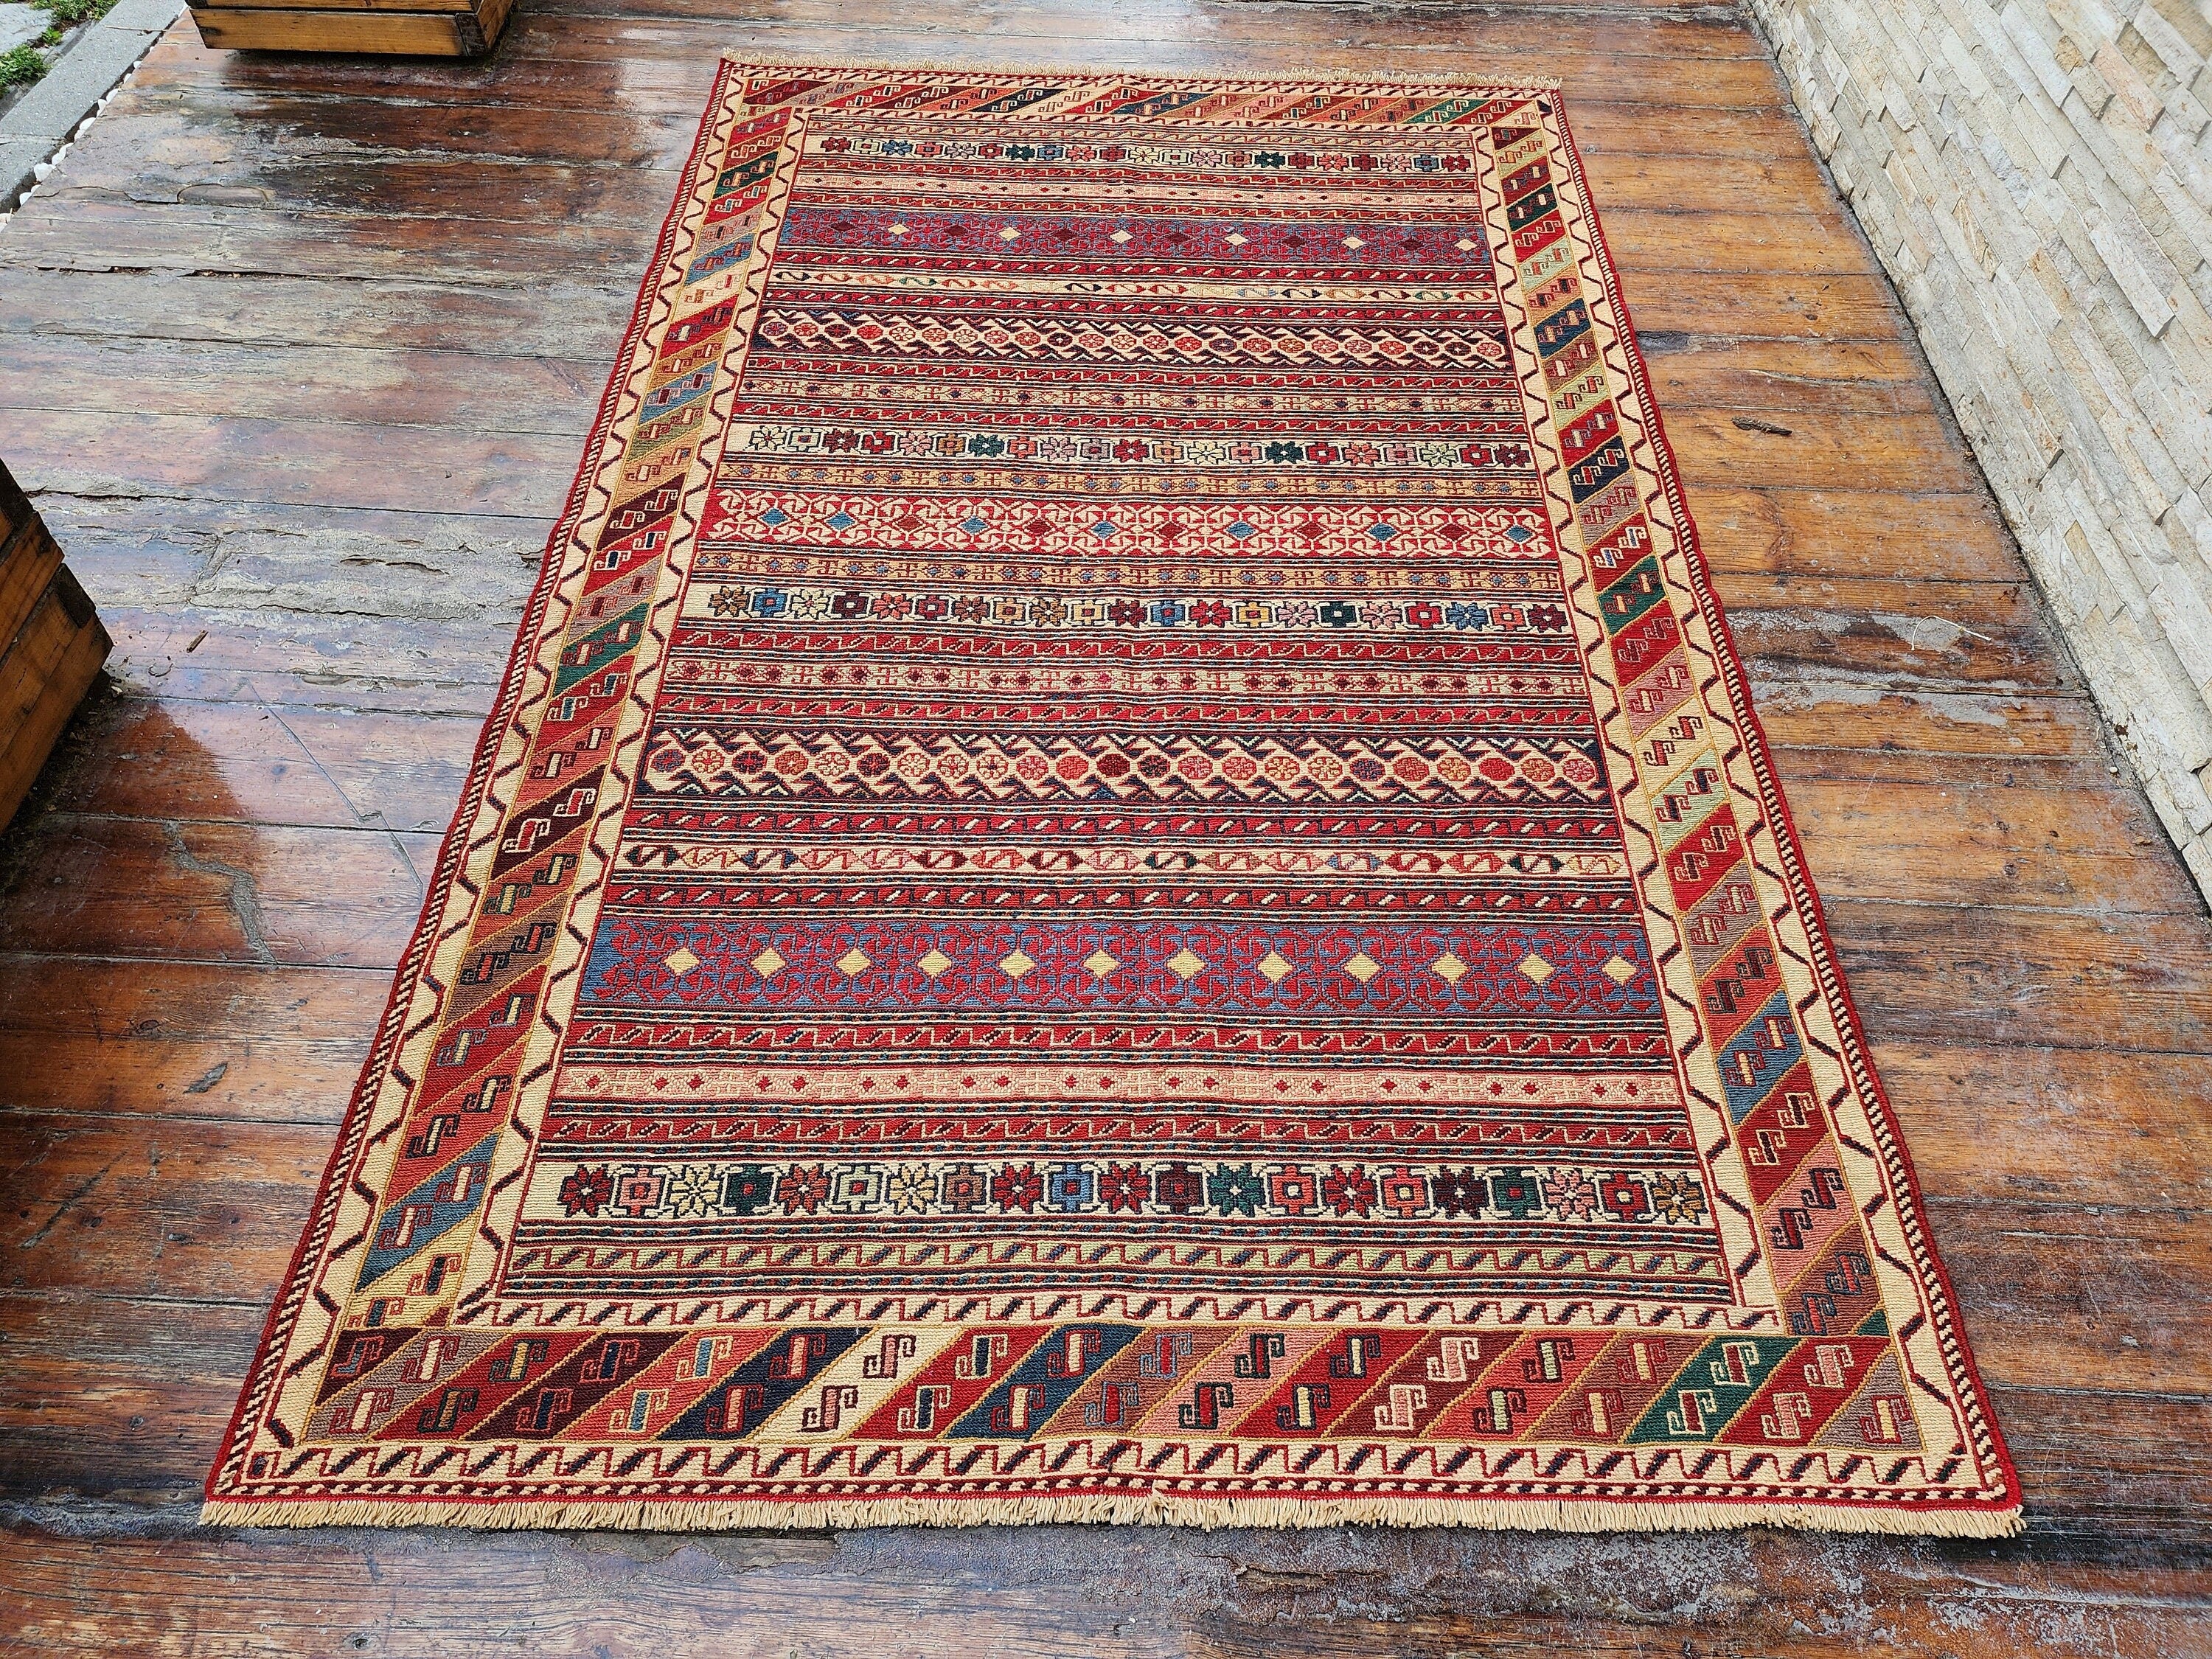 Persian Rah Rah Soumak 6 x4 ft Red Brown and Blue Colorful Handmade Kurdish Kilim, Natural Wool Boho Rustic Floor Rug, Turkish Oriental Rug